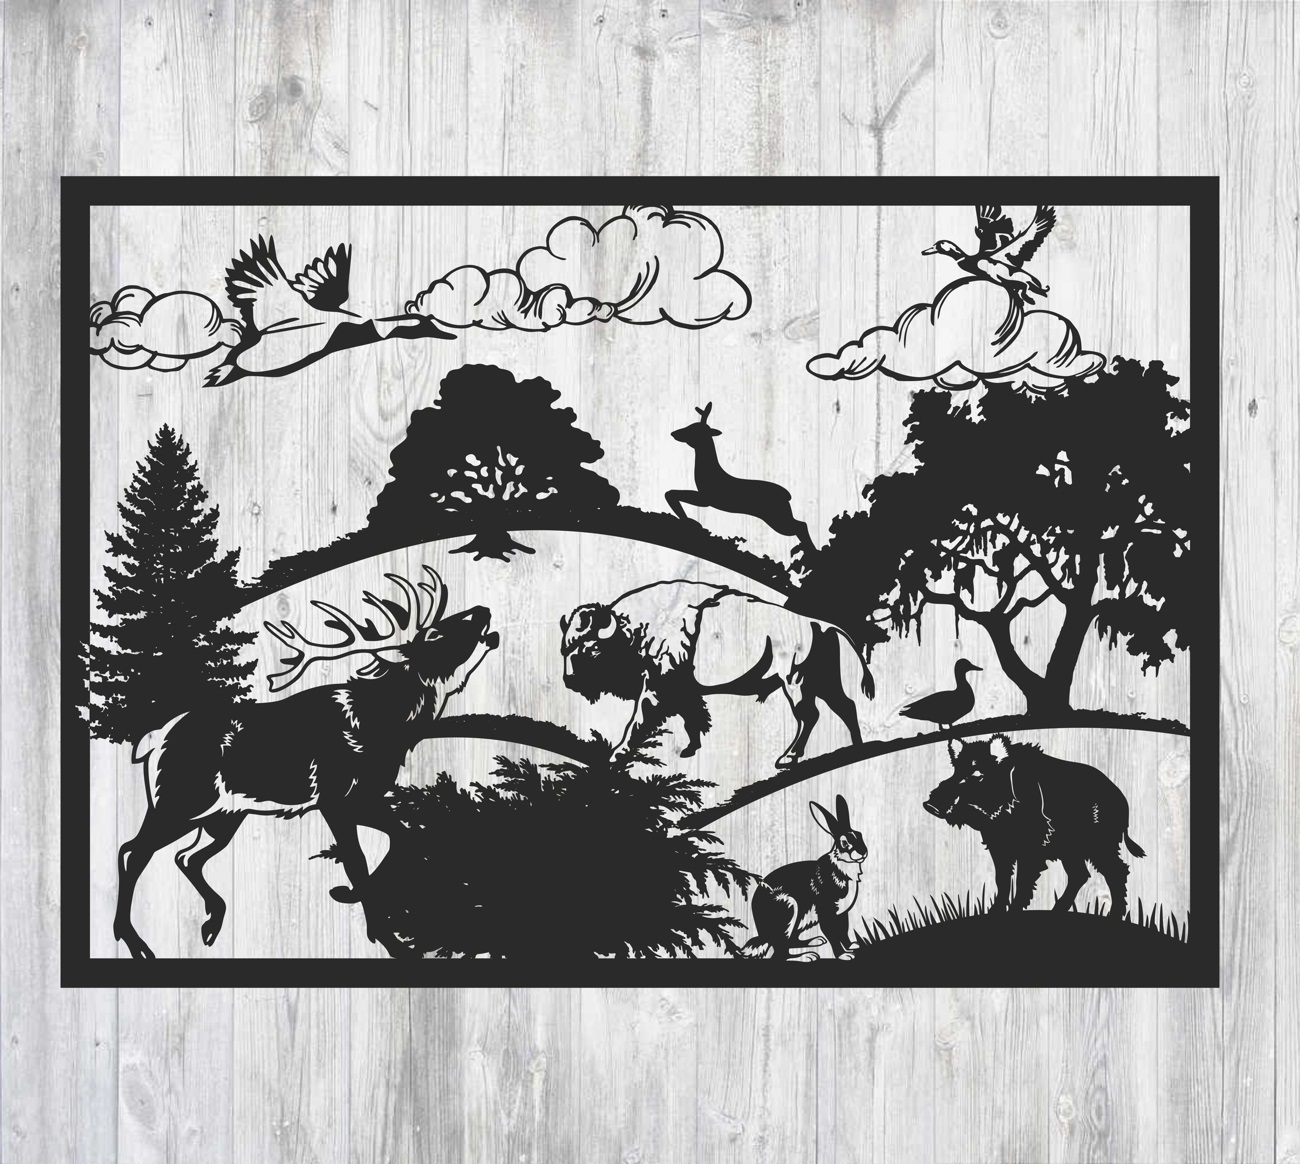 تصميم لوحة حديدي زخرفي للحياة البرية بالليزر